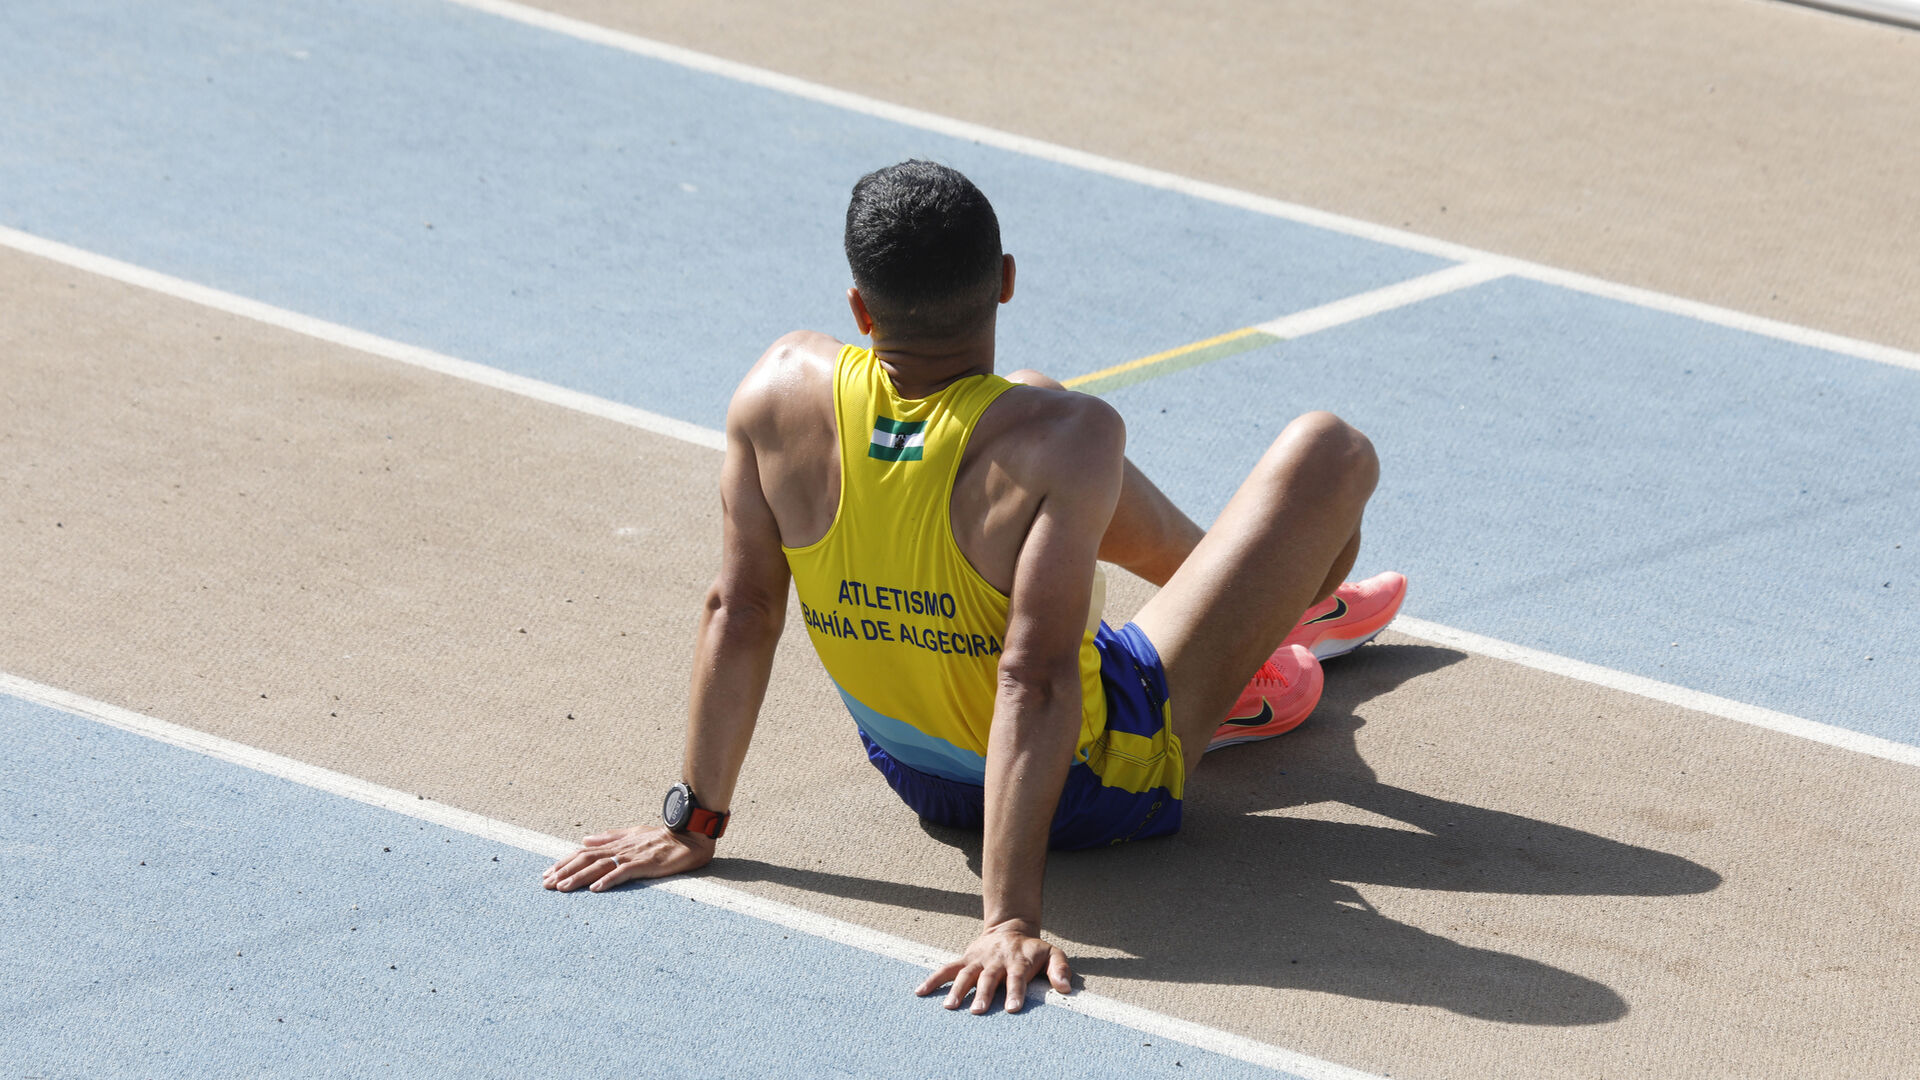 Las fotos de atletismo en las pistas del Enrique Talavera